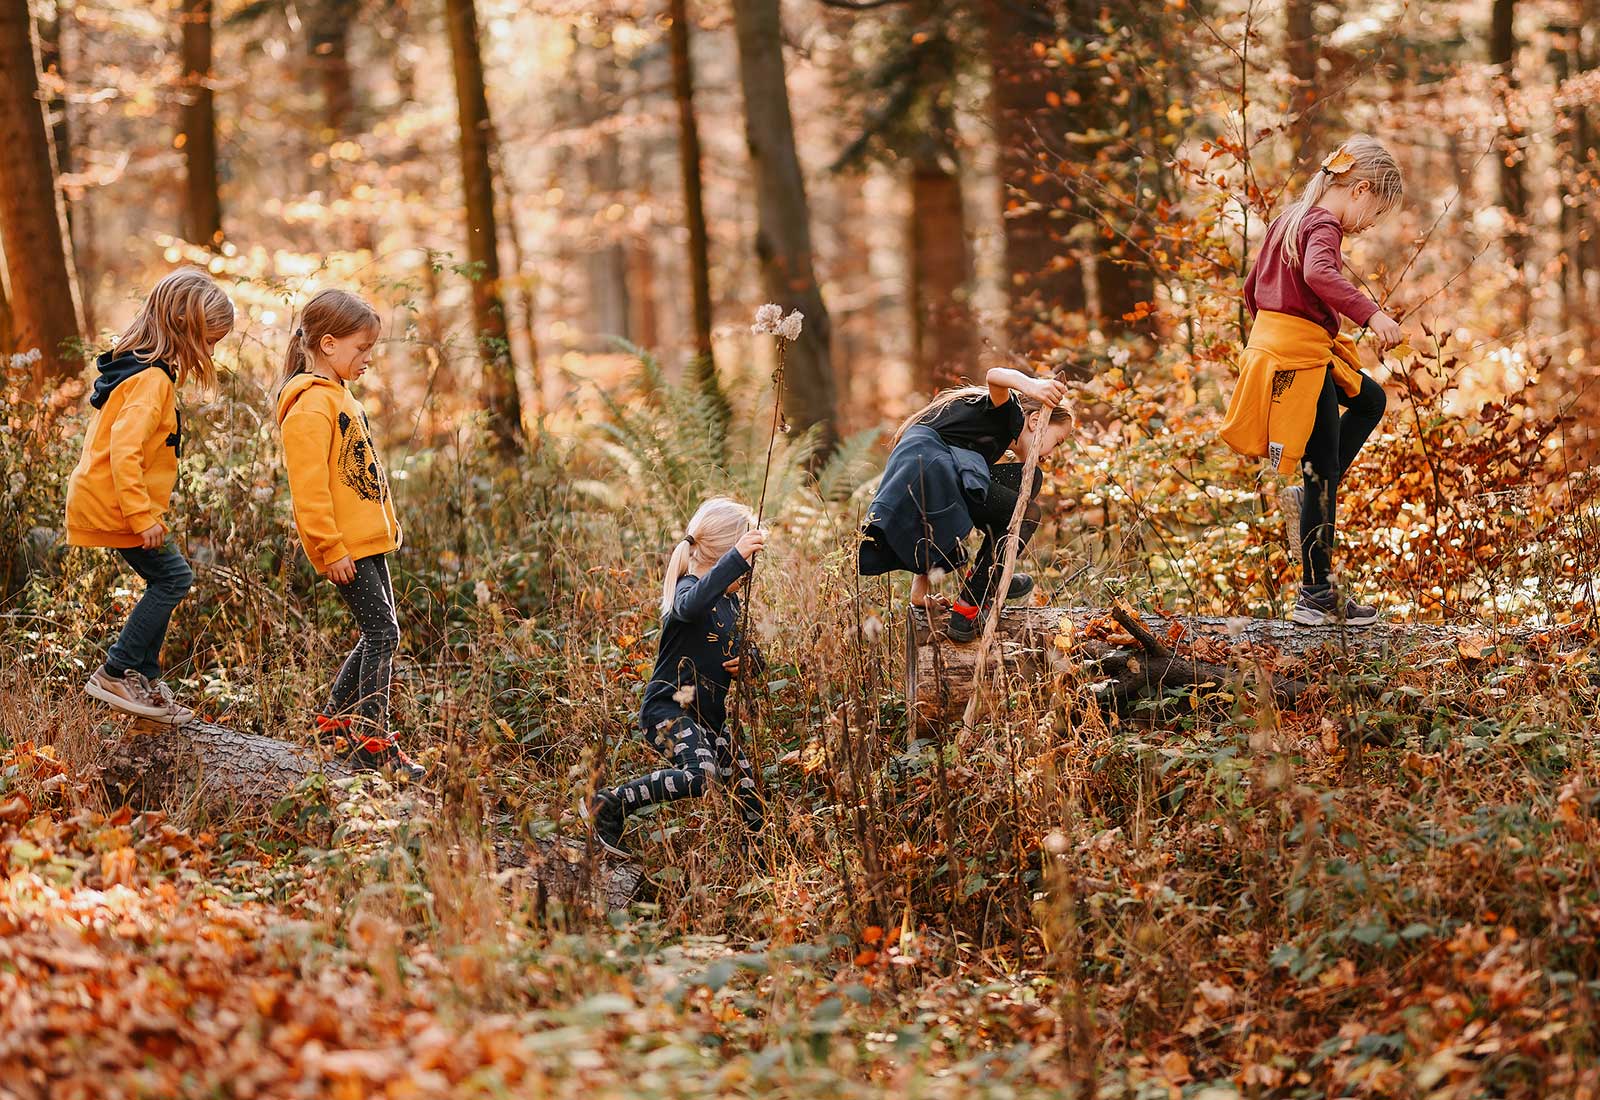 Grupa dziewczynek wędruje po pniu drzewa podczas spaceru w lesie.